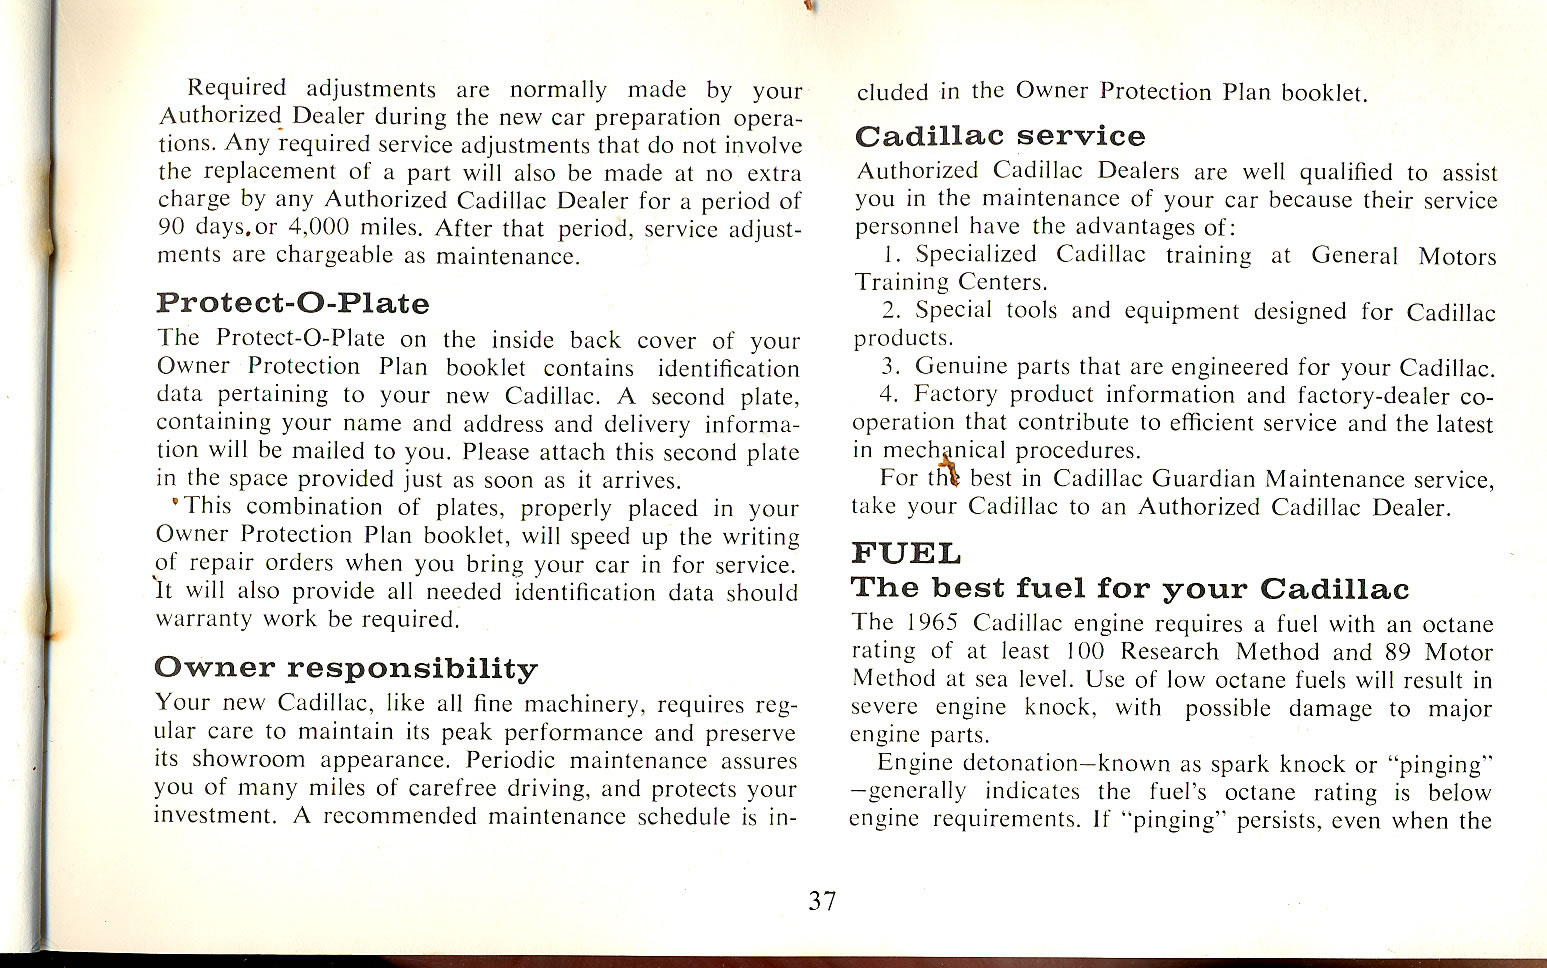 1965_Cadillac_Manual-37